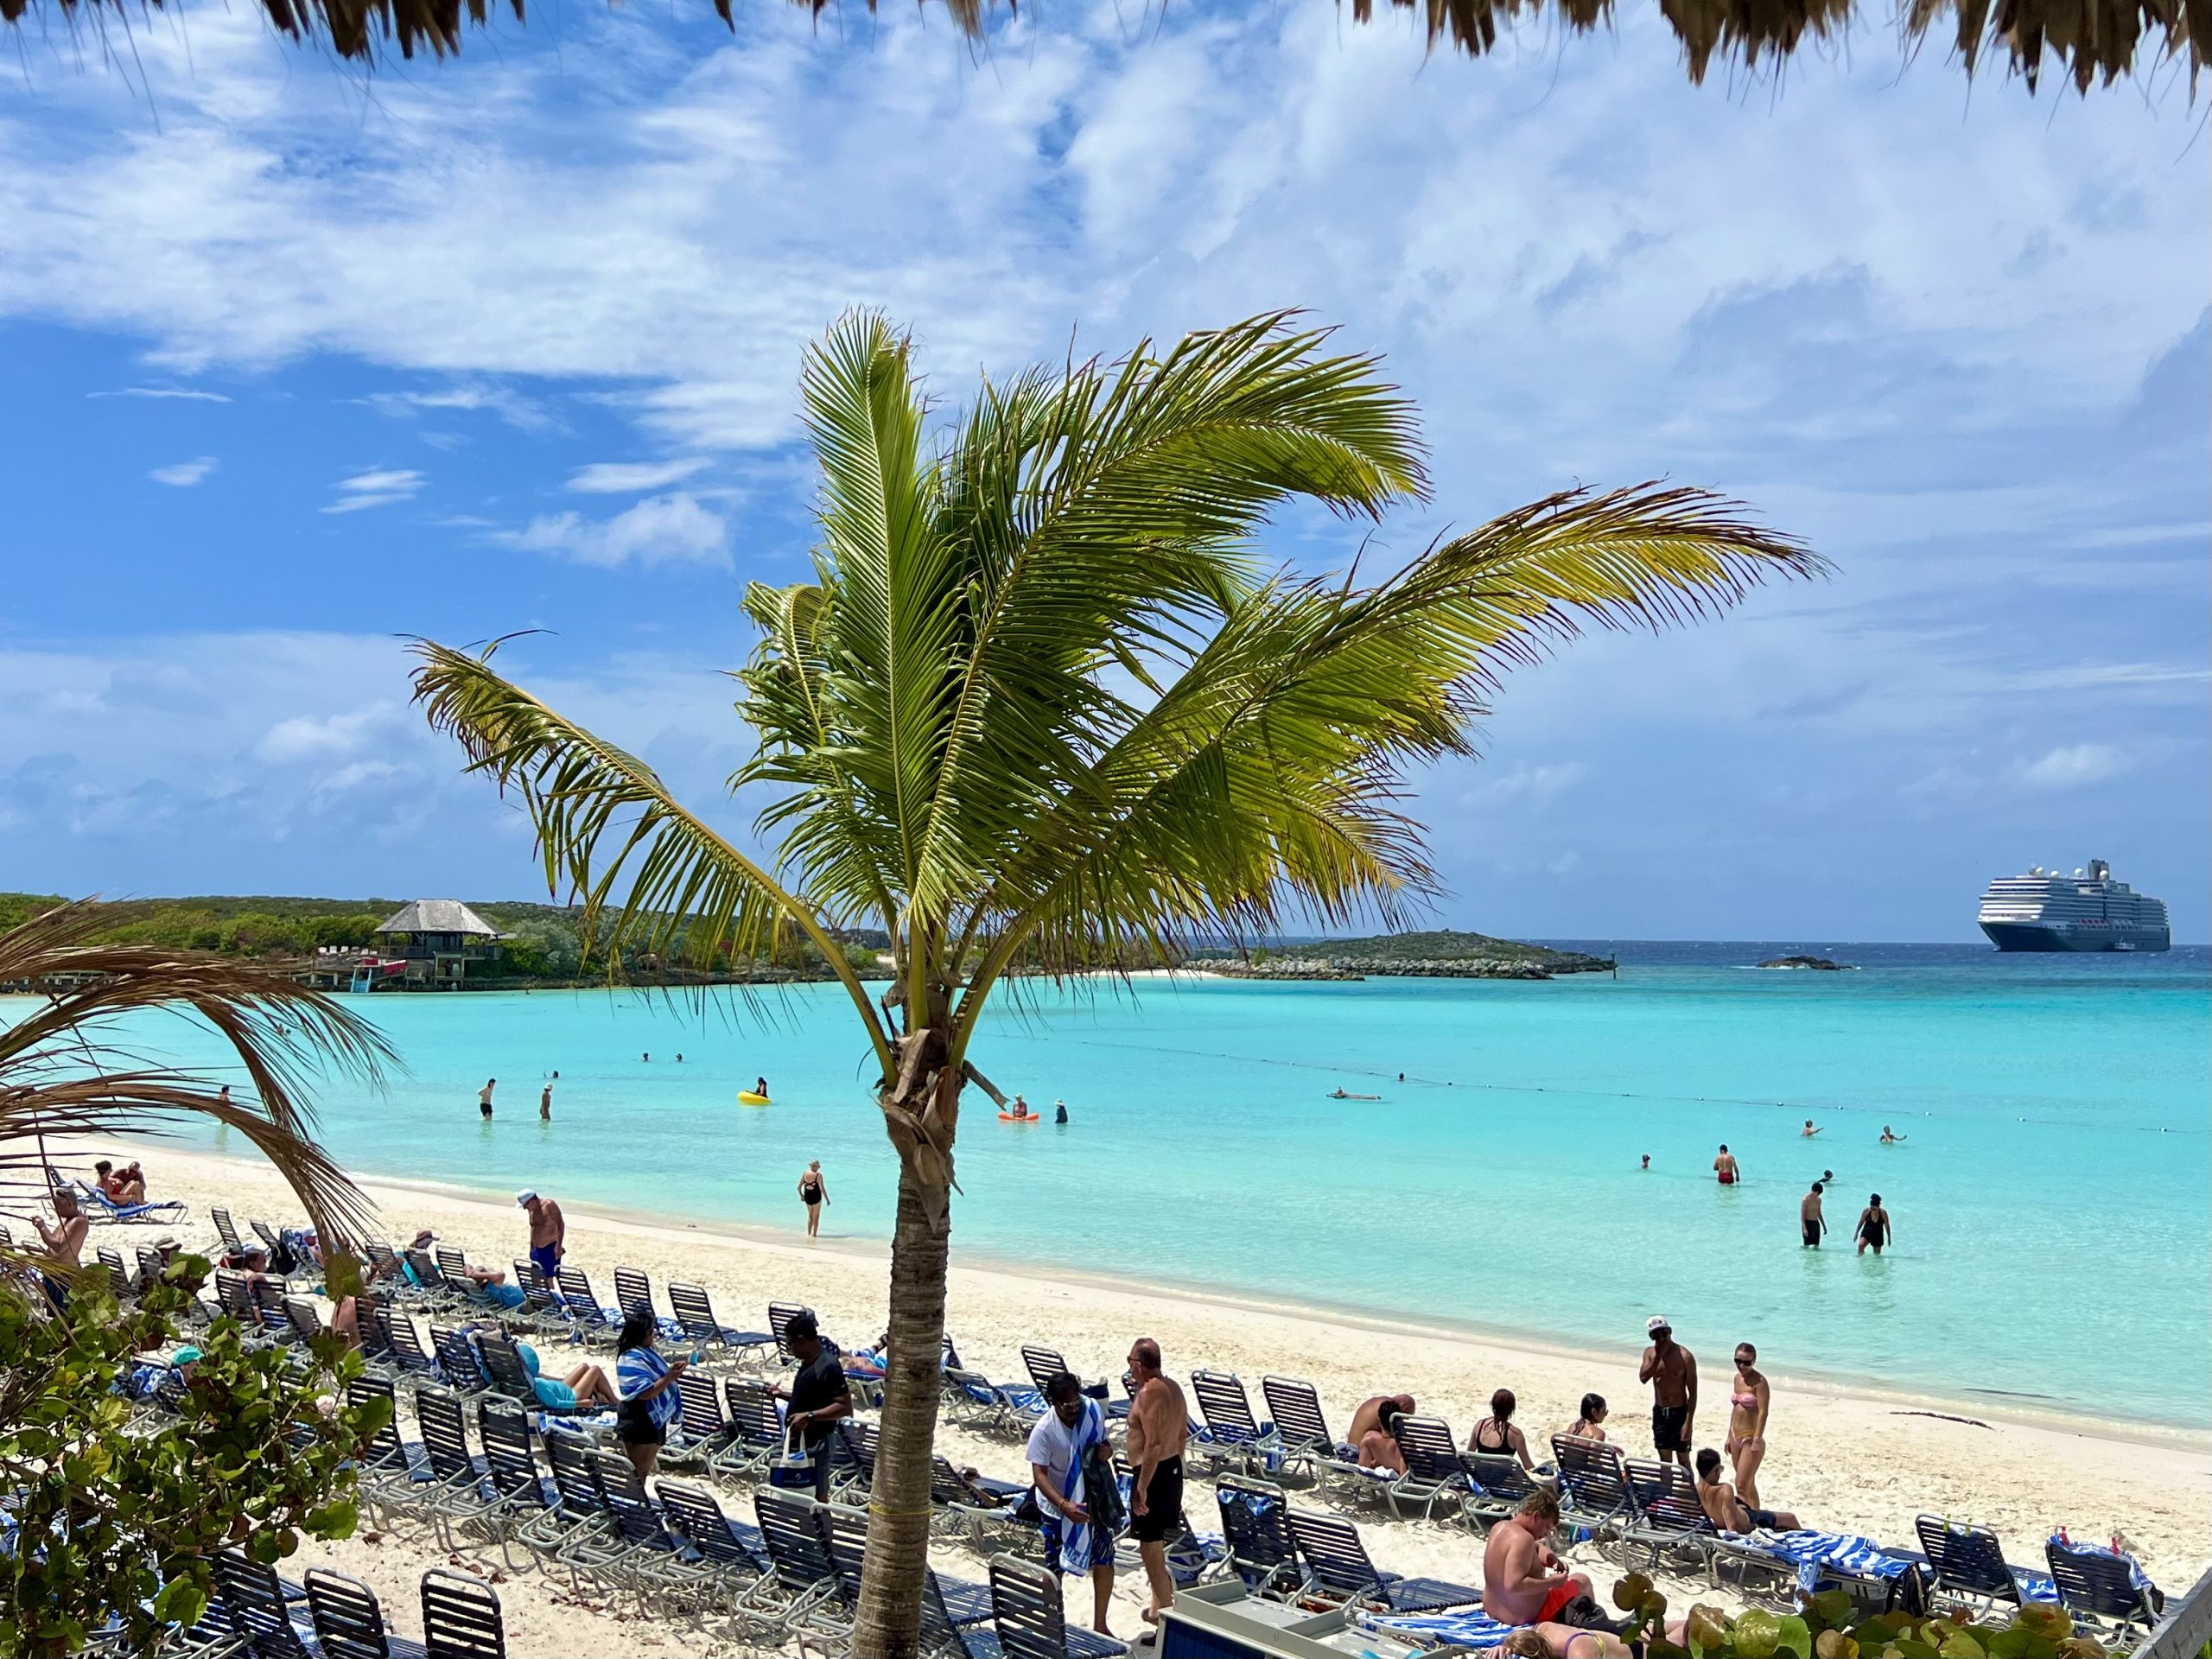 Paradijs bestaat hoor, Half Moon Cay is relaxt genieten van wit poederzand, blauw water en heerlijke cocktails!